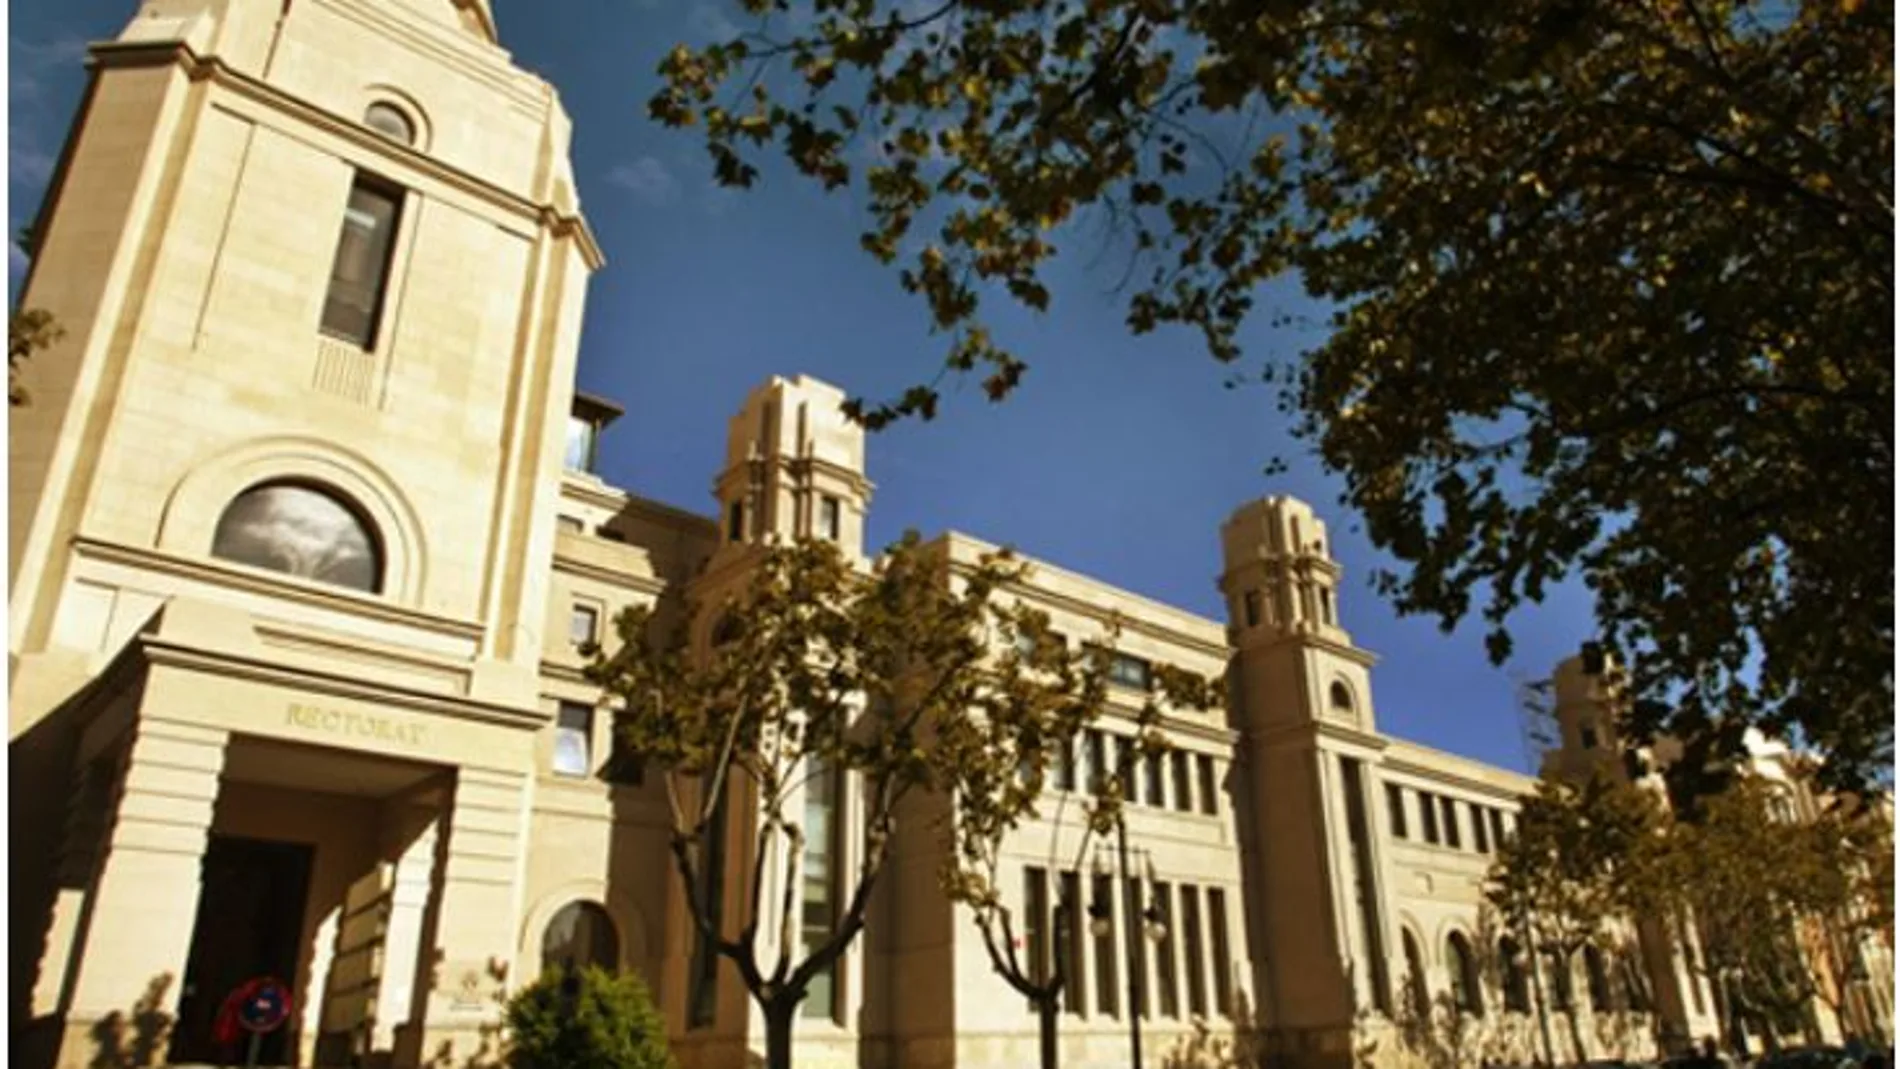 En la imagen, el edificio del Rectorado de la Universitat de València, que publicó el pasado mes de febrero el concurso para el mantenimiento de diferentes centros